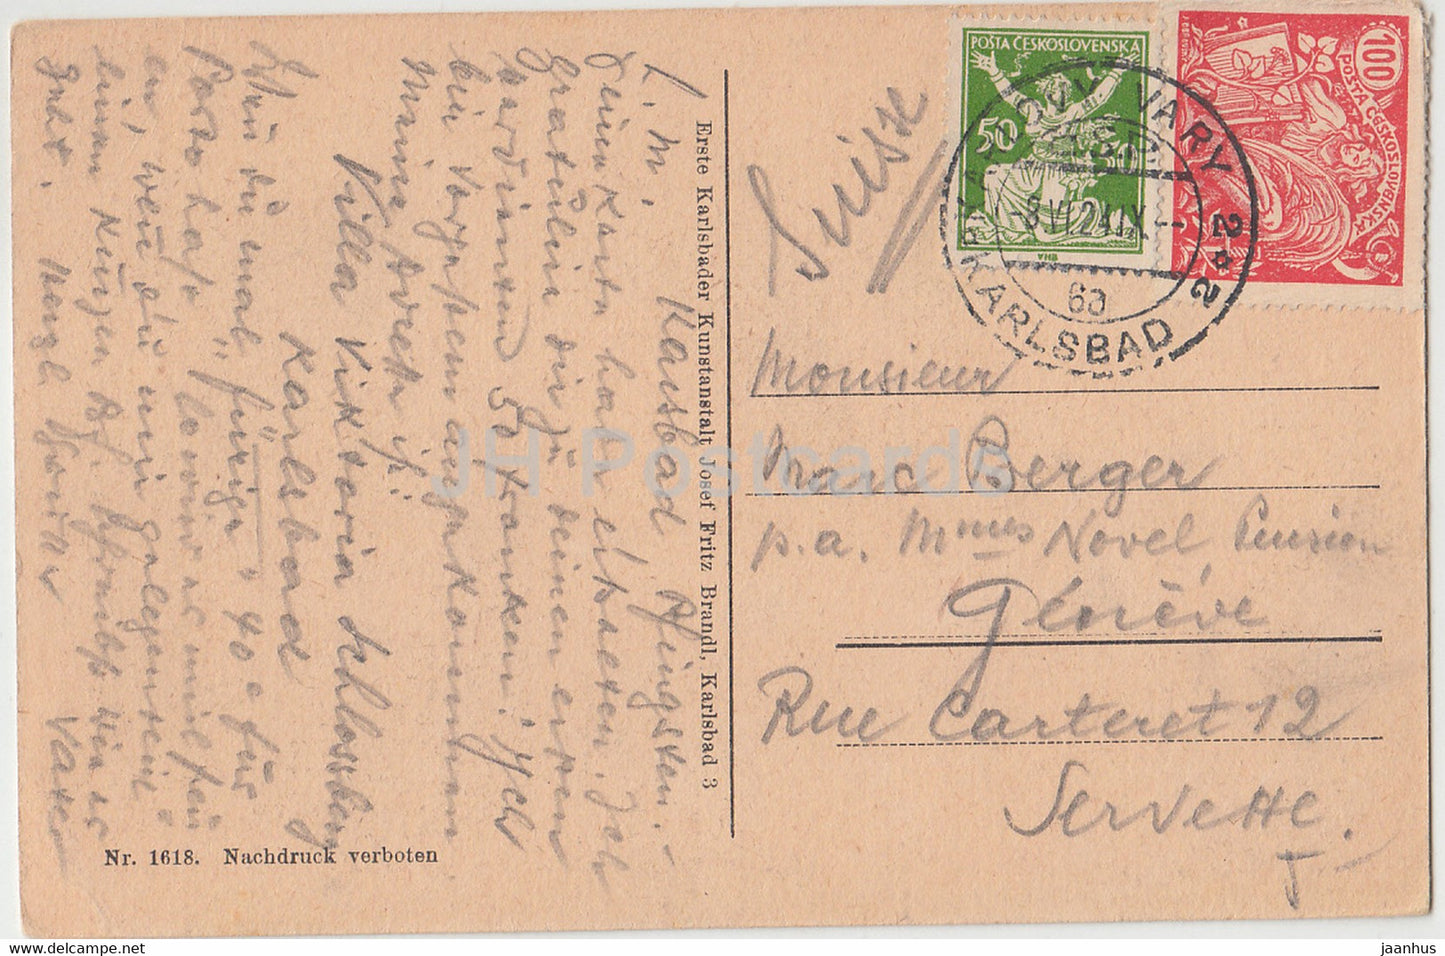 Karlovy Vary - Karlsbad - Alte u Neue Wiese - 1618 - old postcard - 1924 - Czechoslovakia - Czech Republic - used